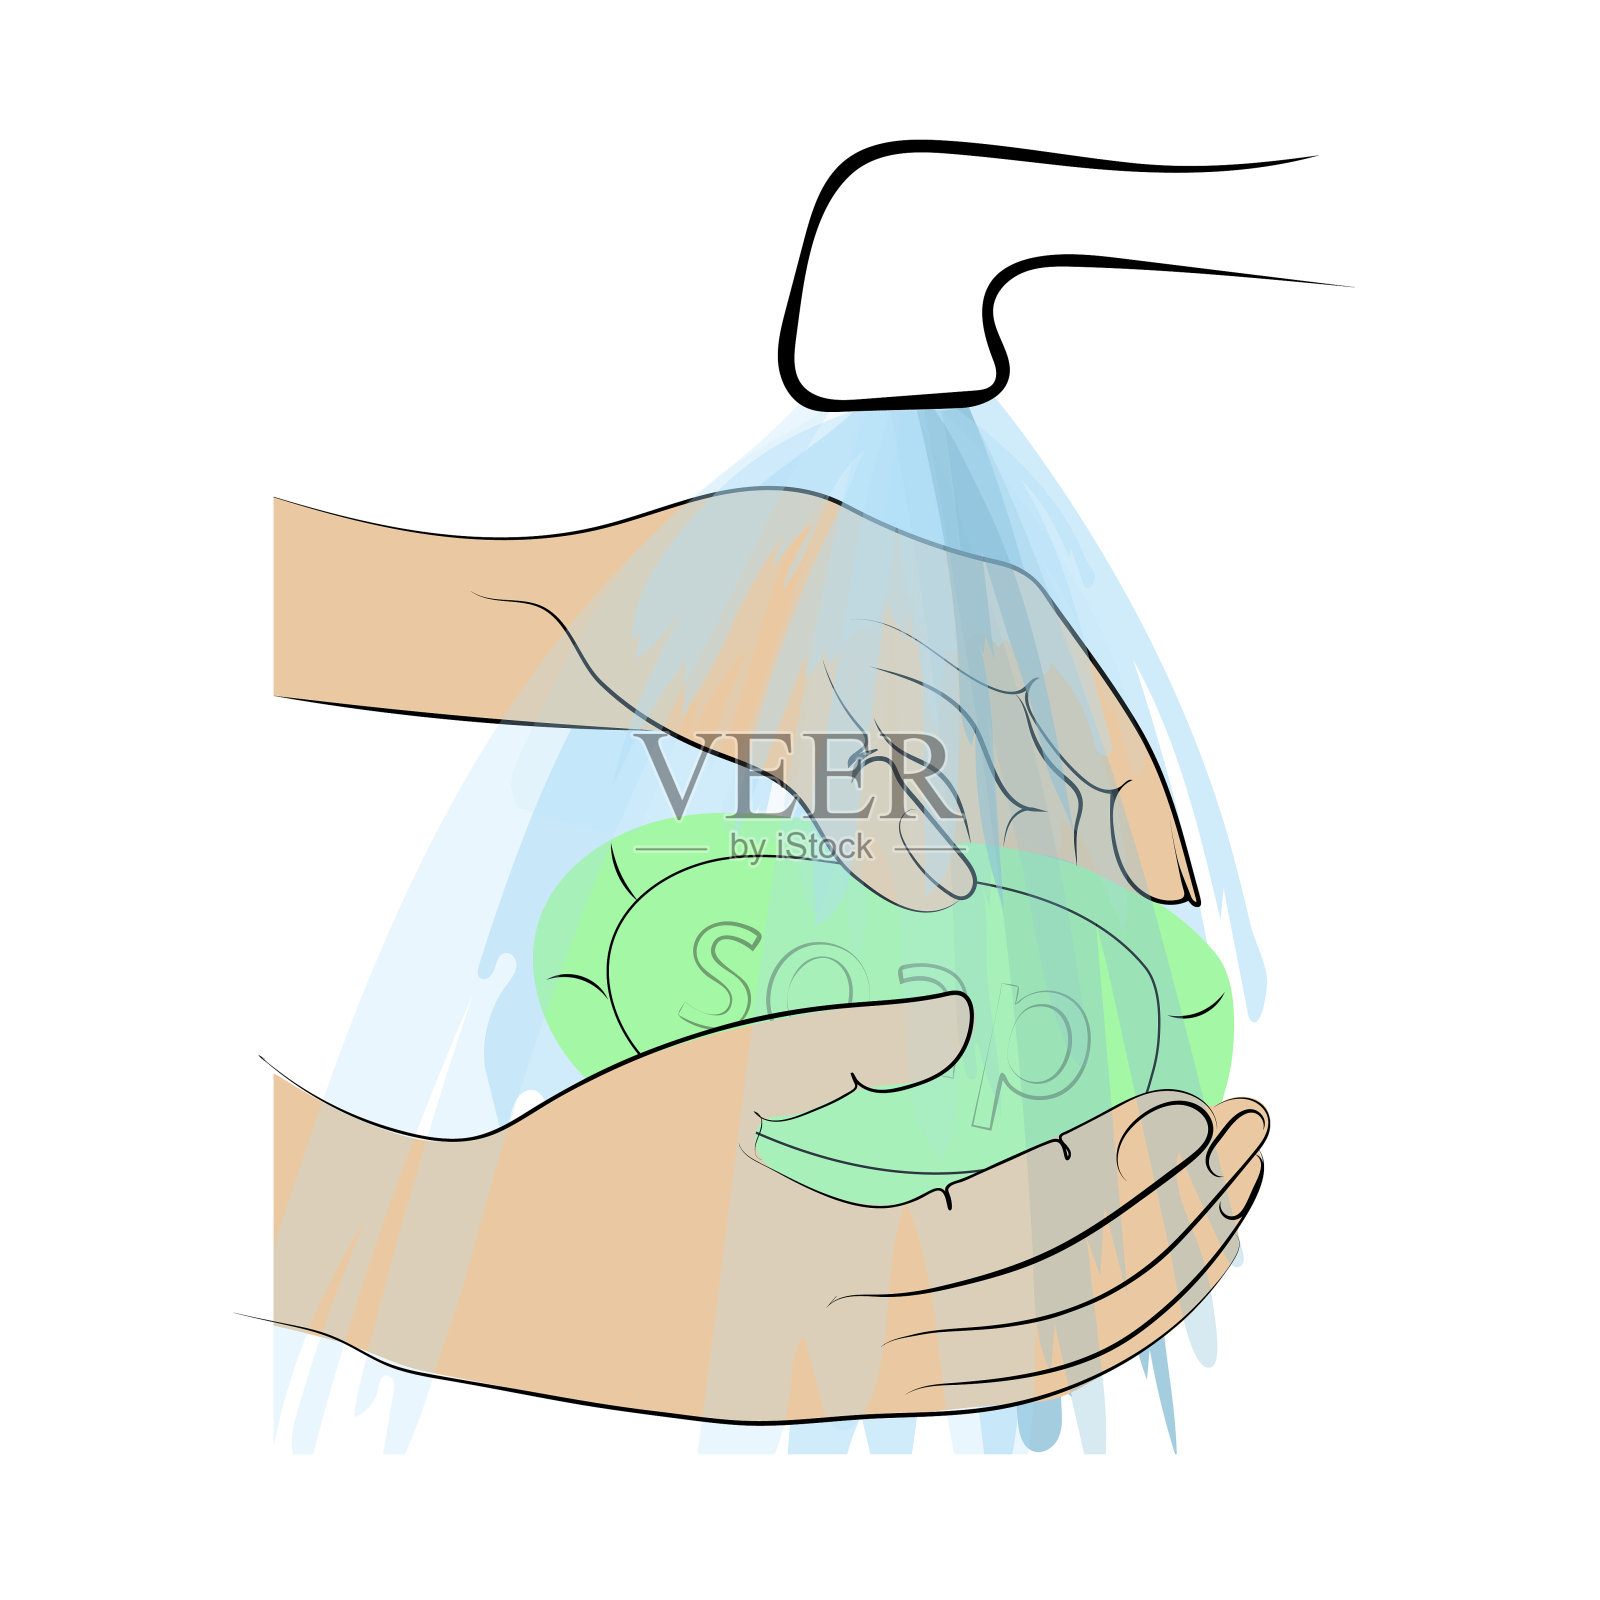 预防病毒性疾病、卫生、病媒种群说明、对抗冠状病毒、在流动的水中用肥皂洗手、预防各种感染和病原体。插画图片素材